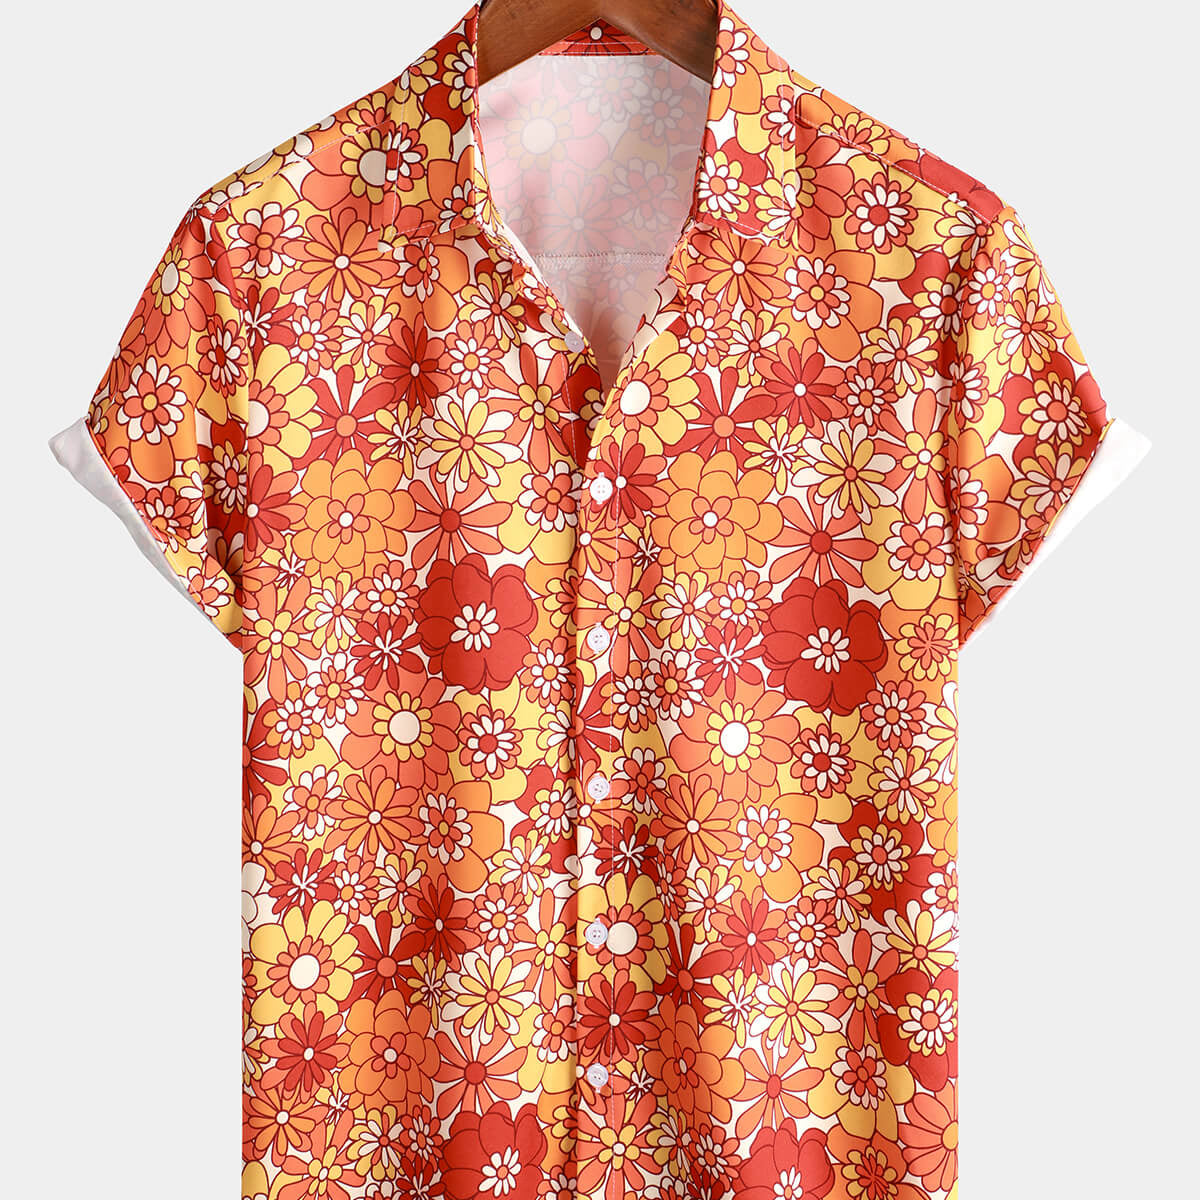 Camisa hawaiana naranja retro de manga corta con botones para fiesta de verano floral vintage para hombre de los años 70